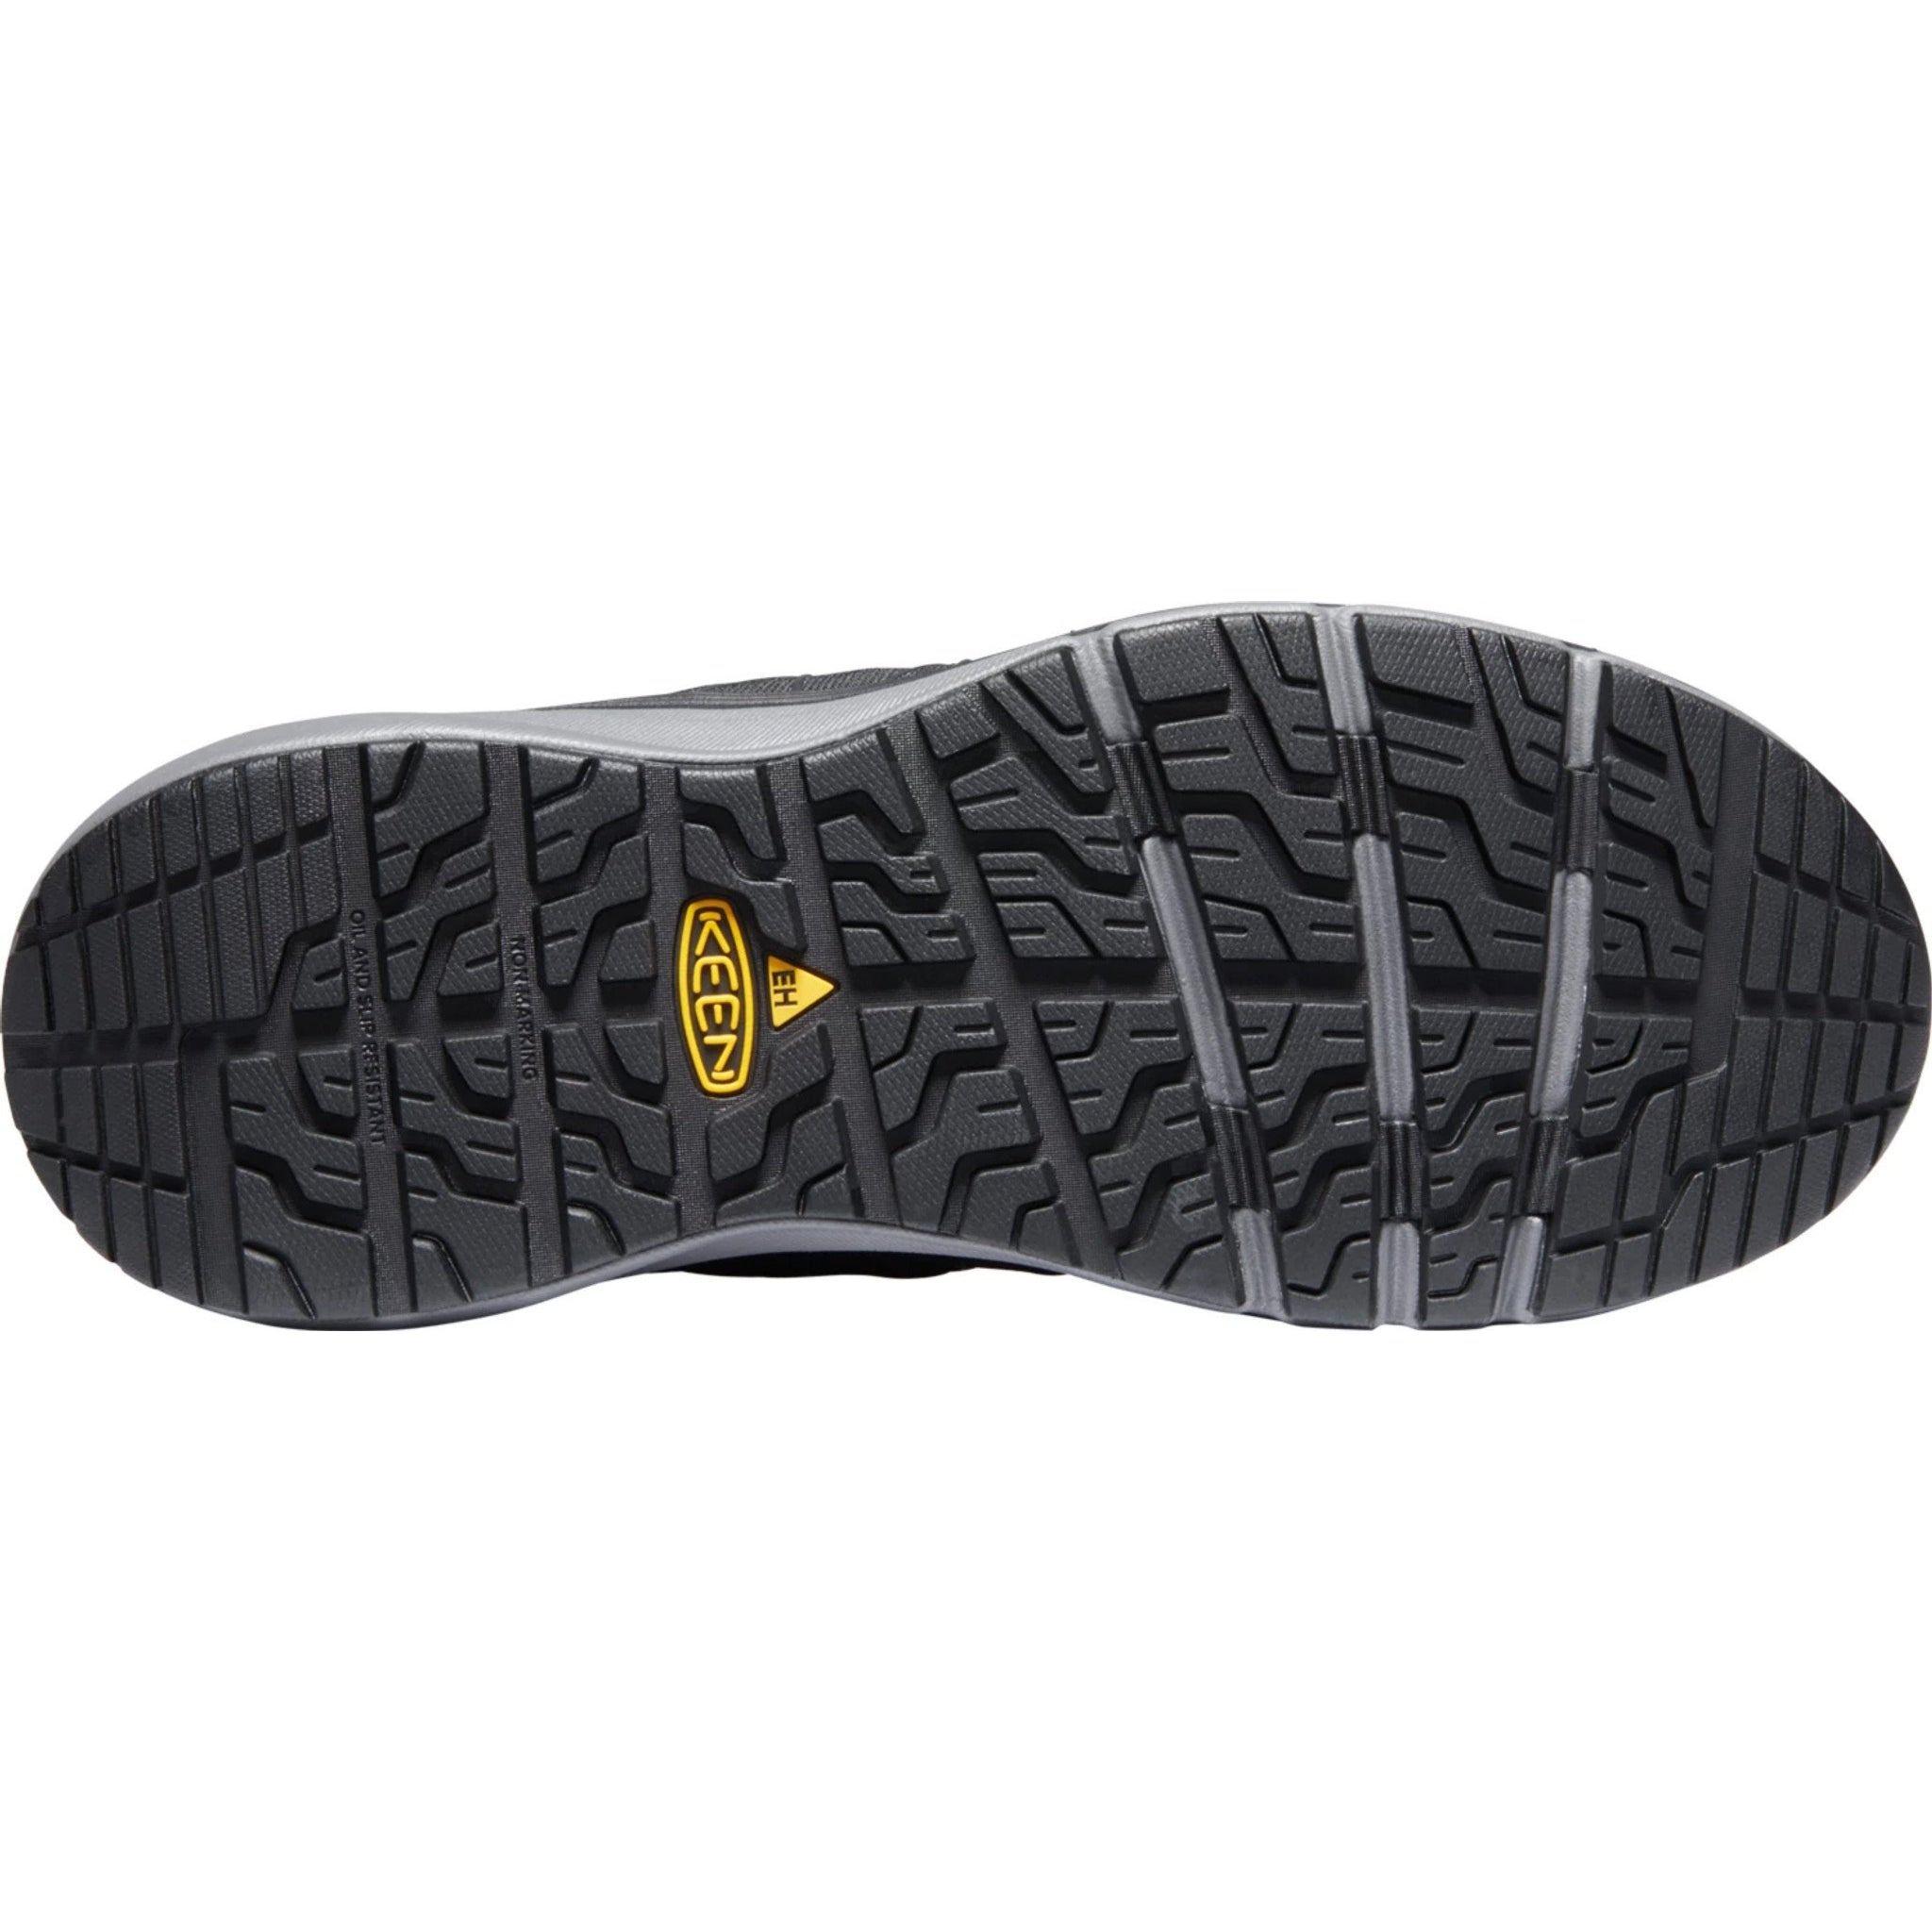 Keen Utility Men's Vista Energy Carbon-Fiber Toe Work Shoe - 1024581  - Overlook Boots